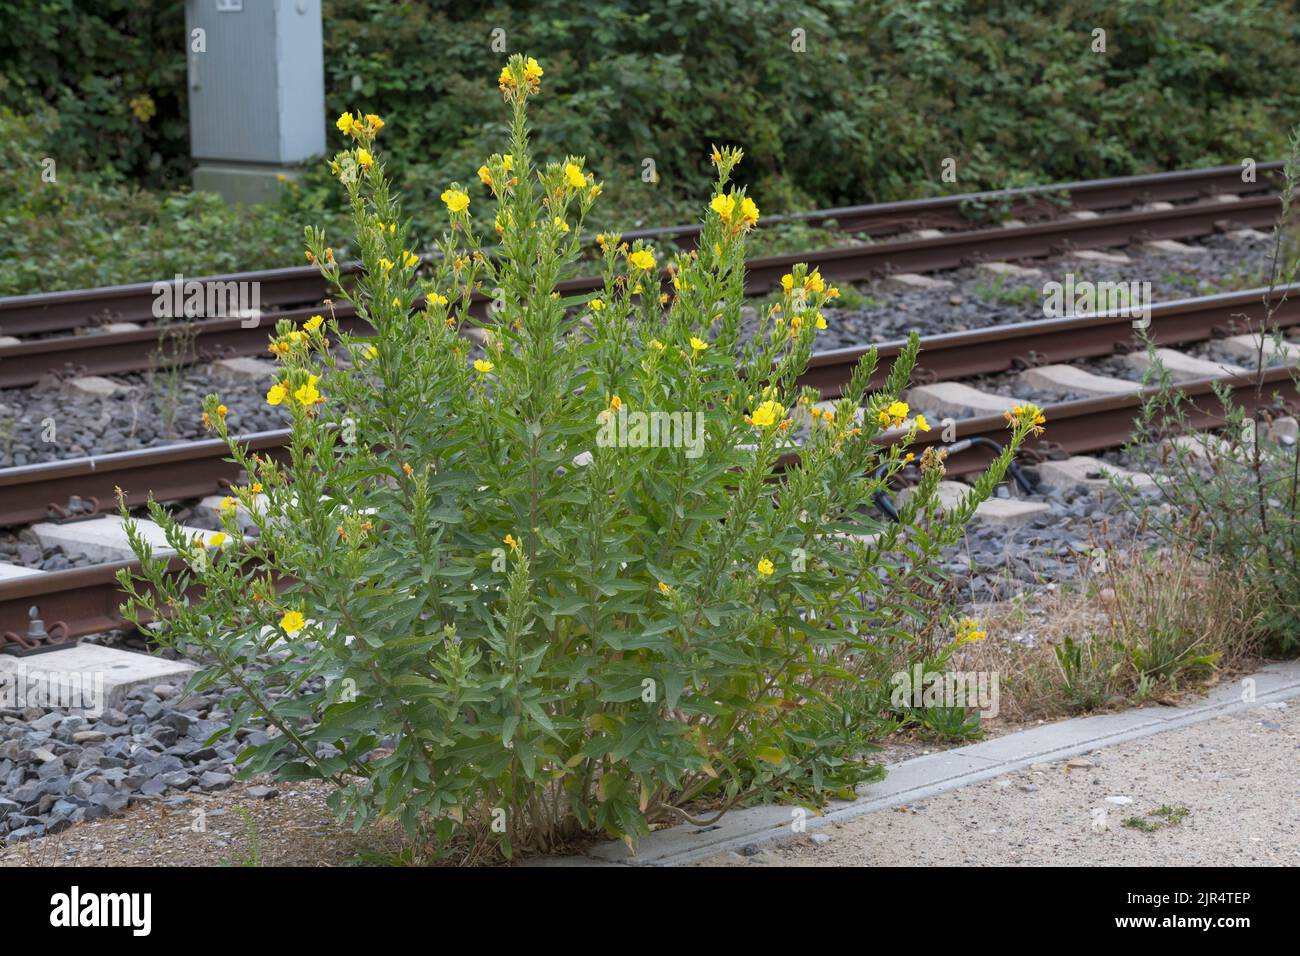 La onagra (Oenothera spec.), crece junto a una vía férrea, Alemania Foto de stock